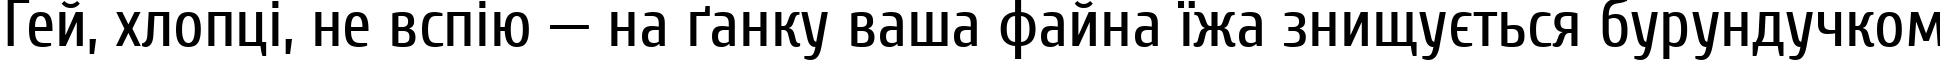 Пример написания шрифтом Cuprum текста на украинском